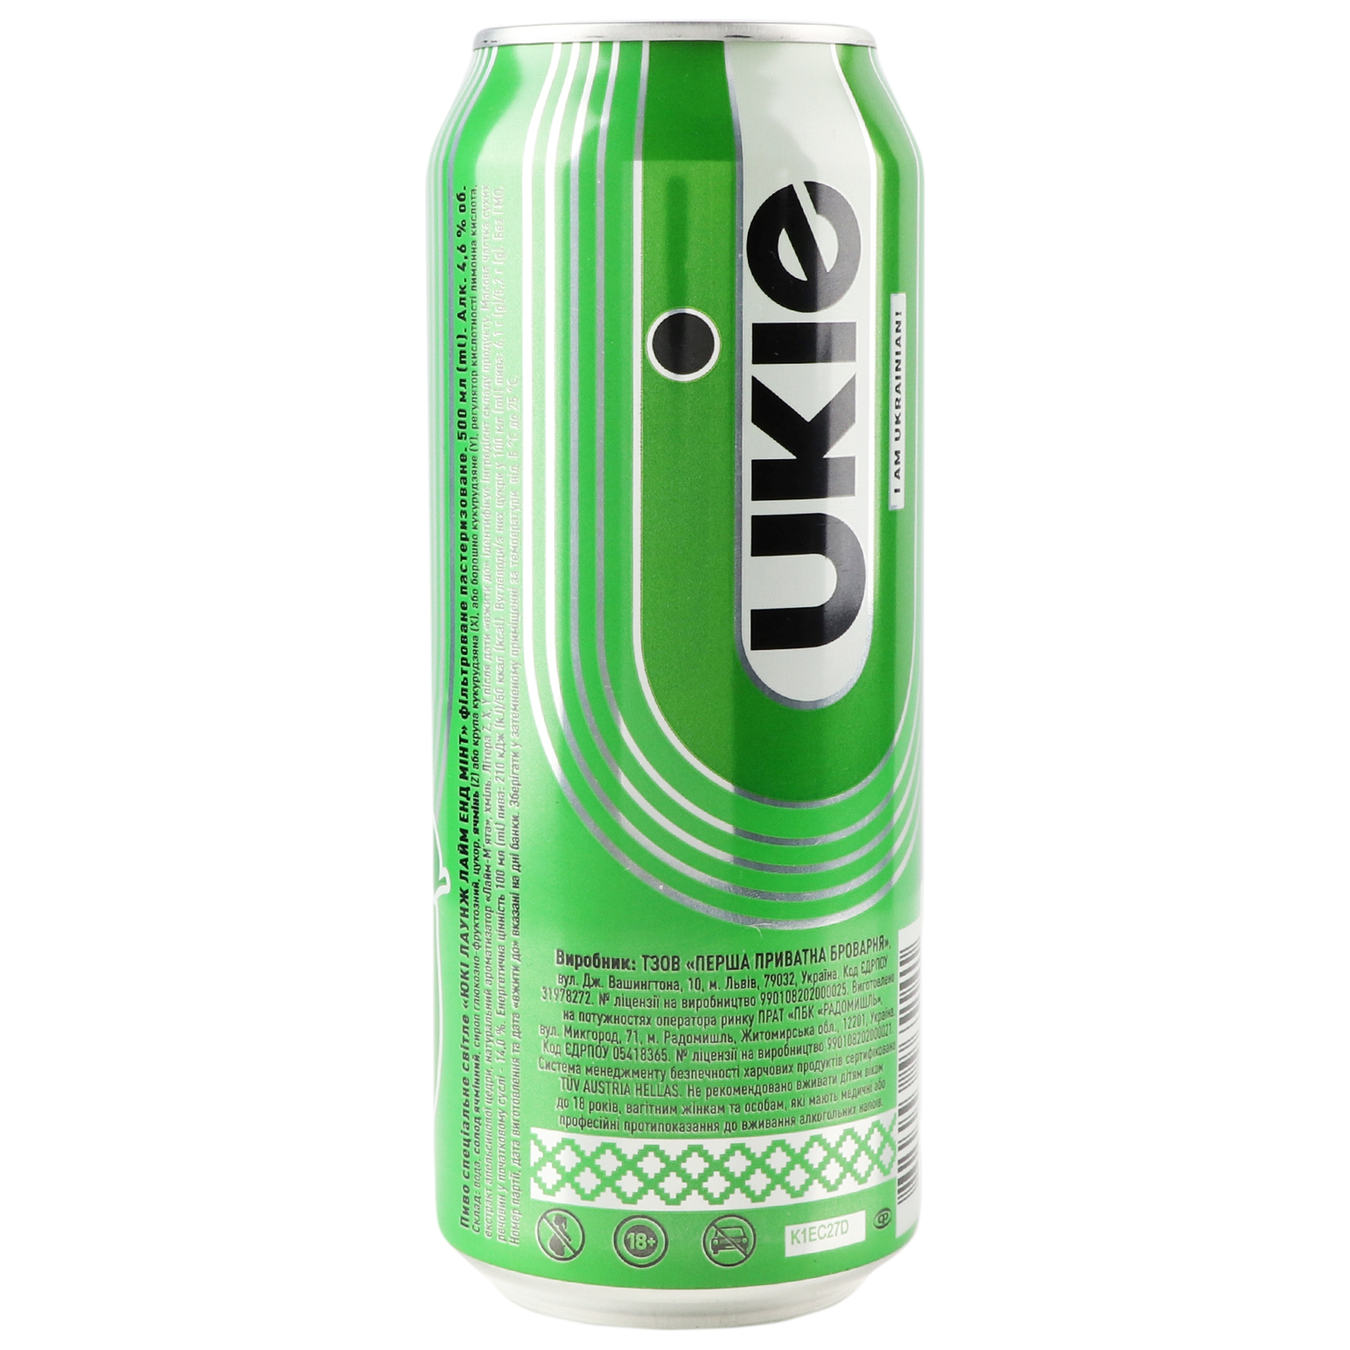 Пиво UKIE специальное светлое со вкусом лайма и лимона 4,6% 0,5л 2